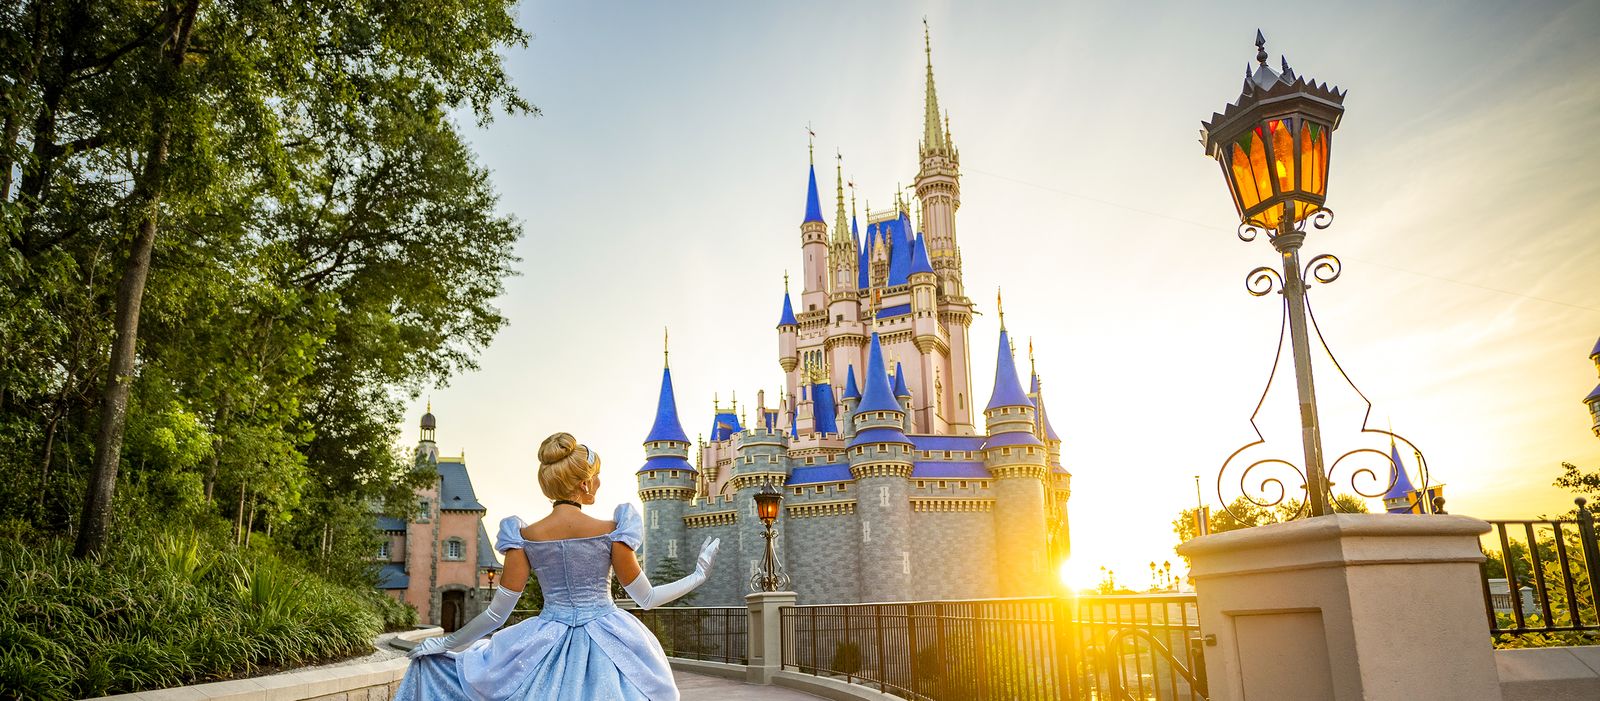 Das traumhafte Schloss im Magic Kingdom der Disney World in Orlando